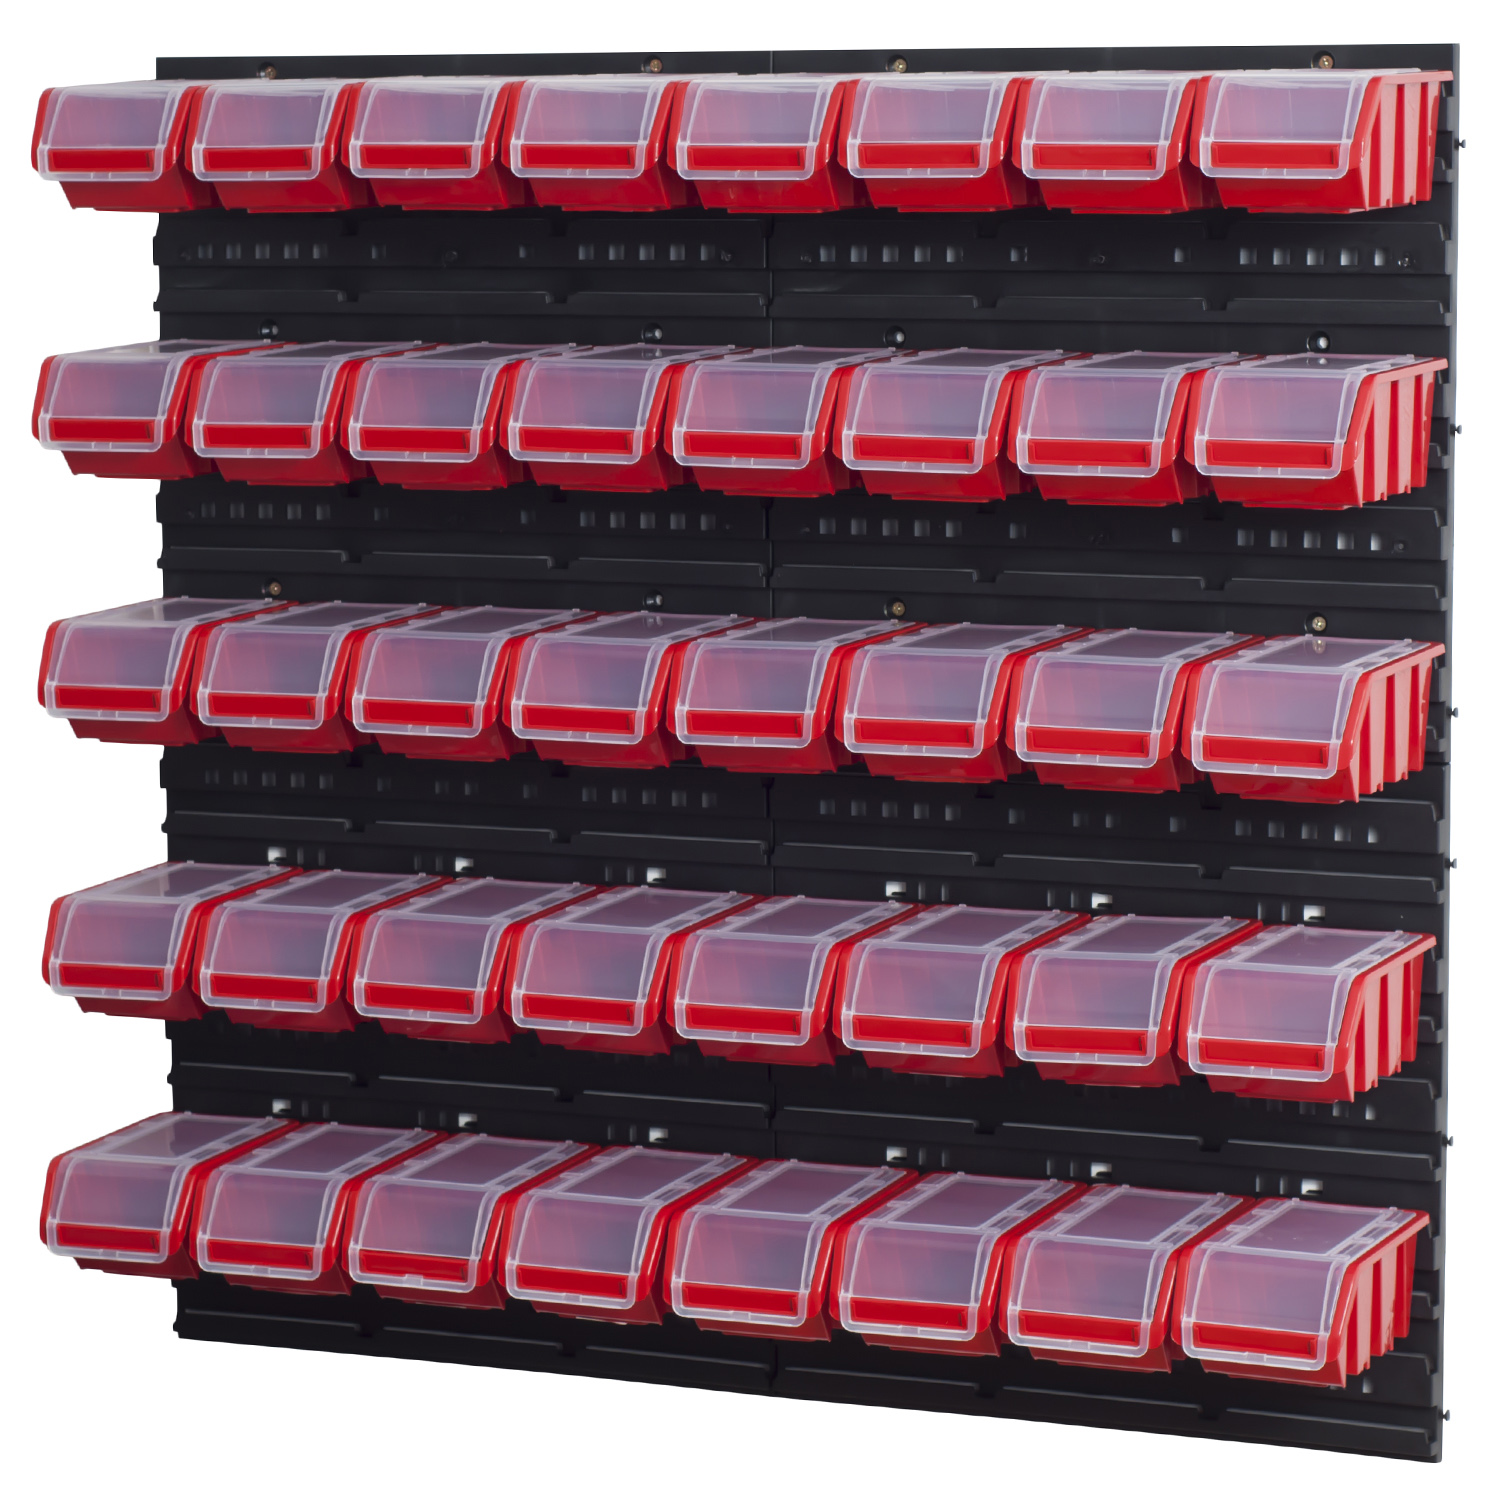 18 mittlere Stapelboxen/Inklusive Befestigungsmaterial/Herausnehmbar & Stapelbar AREBOS Stapelboxen Wandregal 32tlg Lagersystem/Rot-Schwarz 12 große Stapelboxen